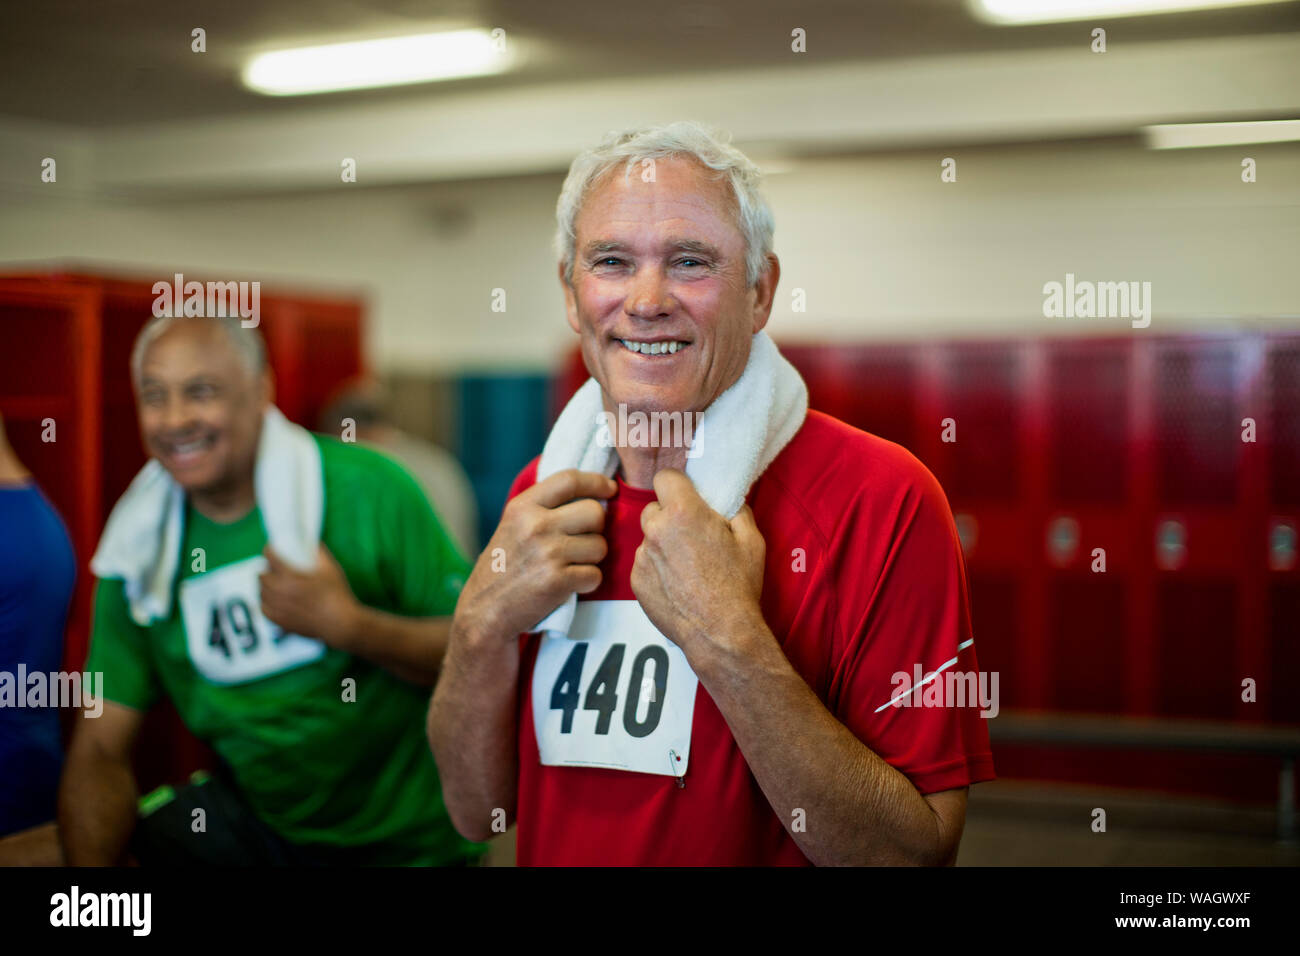 Porträt eines lächelnden älteren Mann in eine Turnhalle. Stockfoto